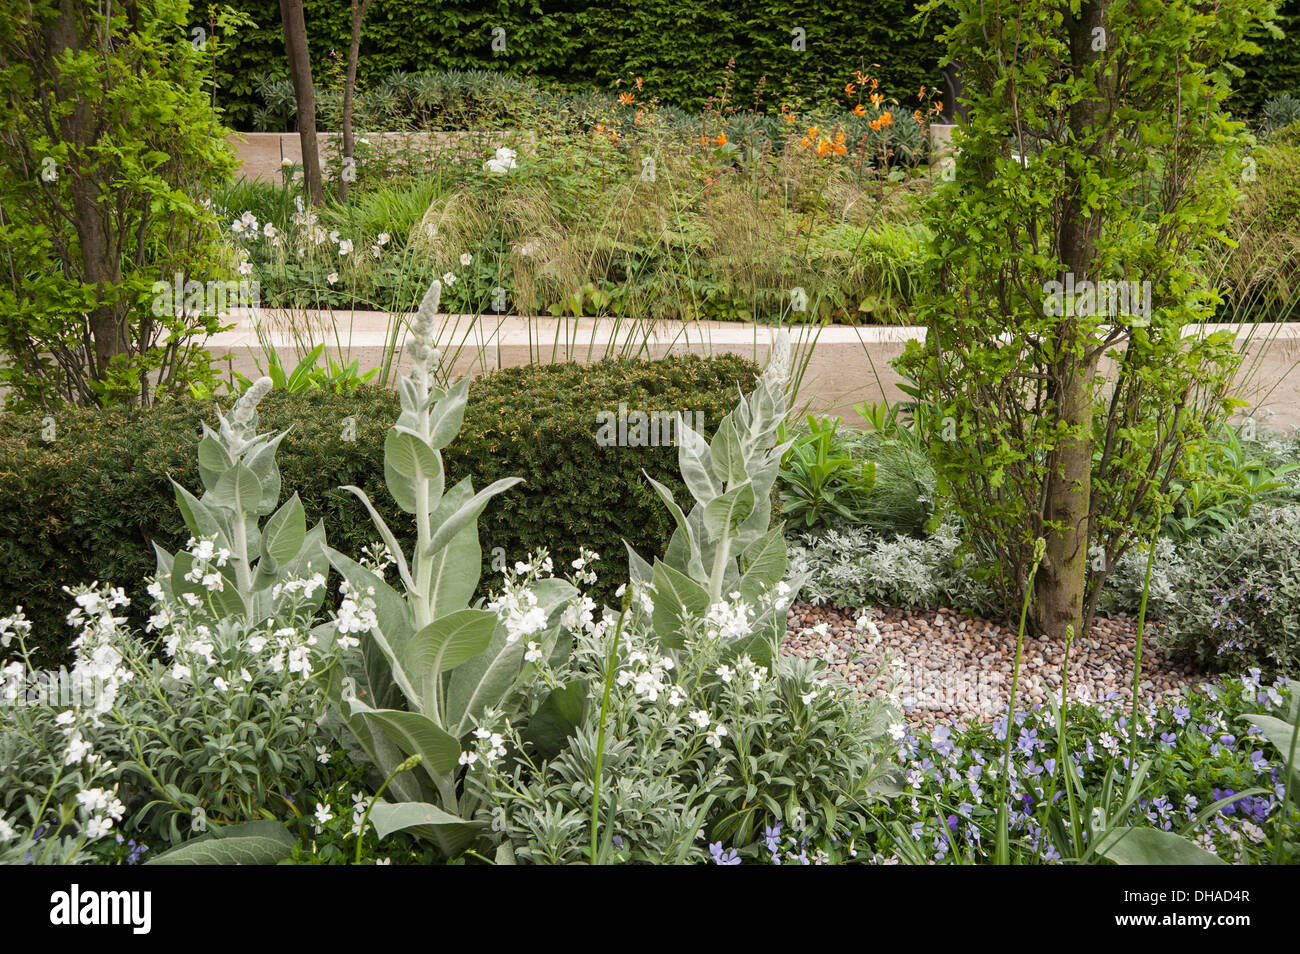 Chelsea Flower Show 2013, Laurent Perrier garden, Designer Ulf Nordfjell. Gold award Stock Photo